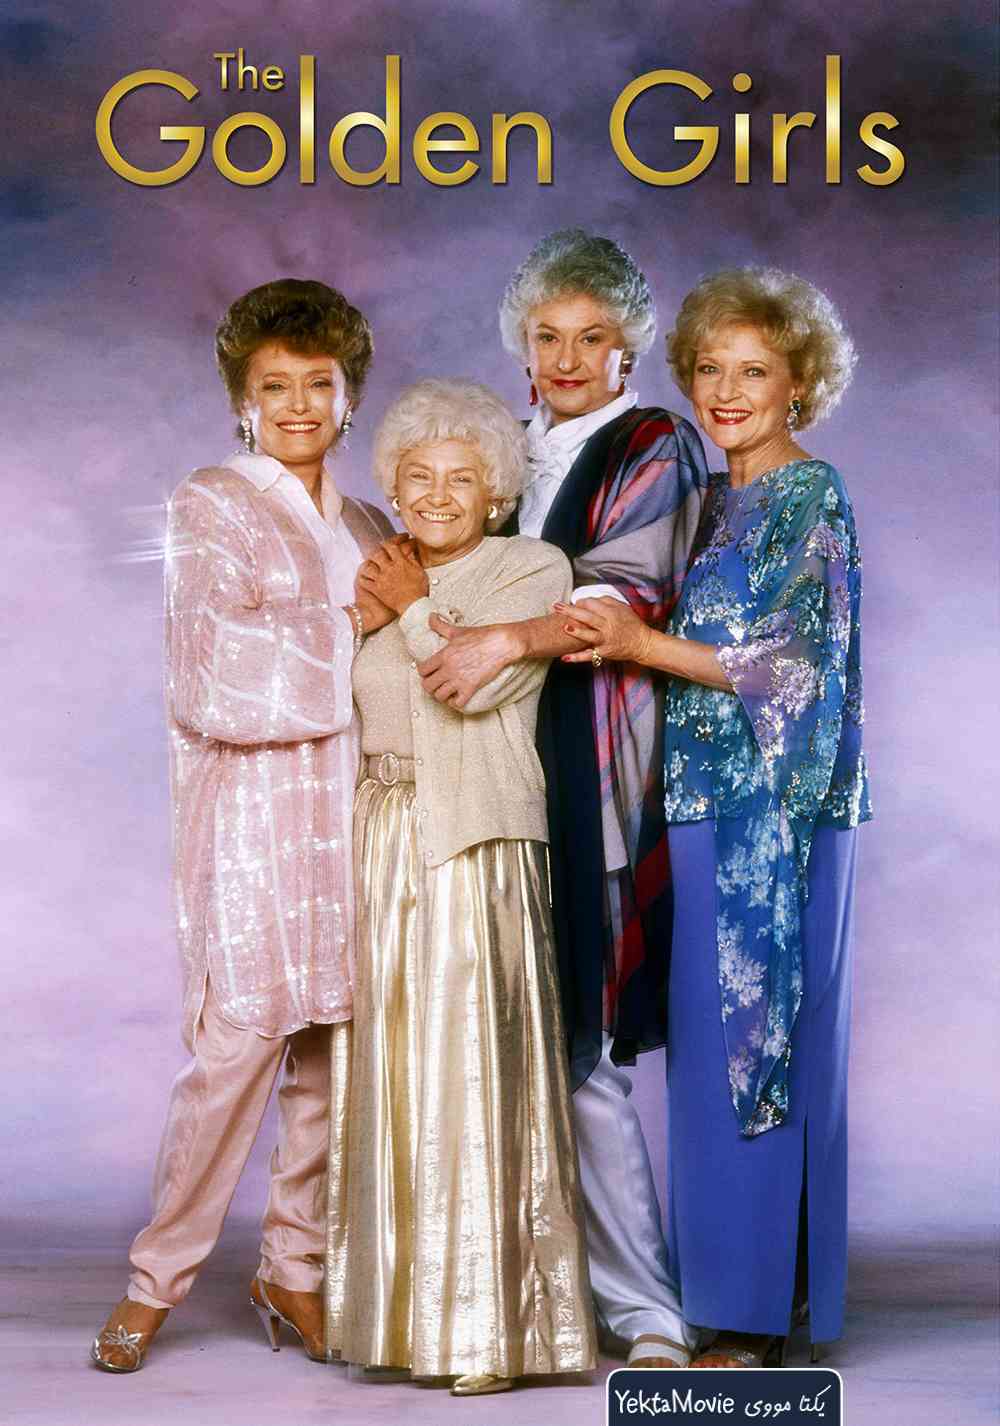 سریال The Golden Girls 1985 ( دختران طلایی ۱۹۸۵ )